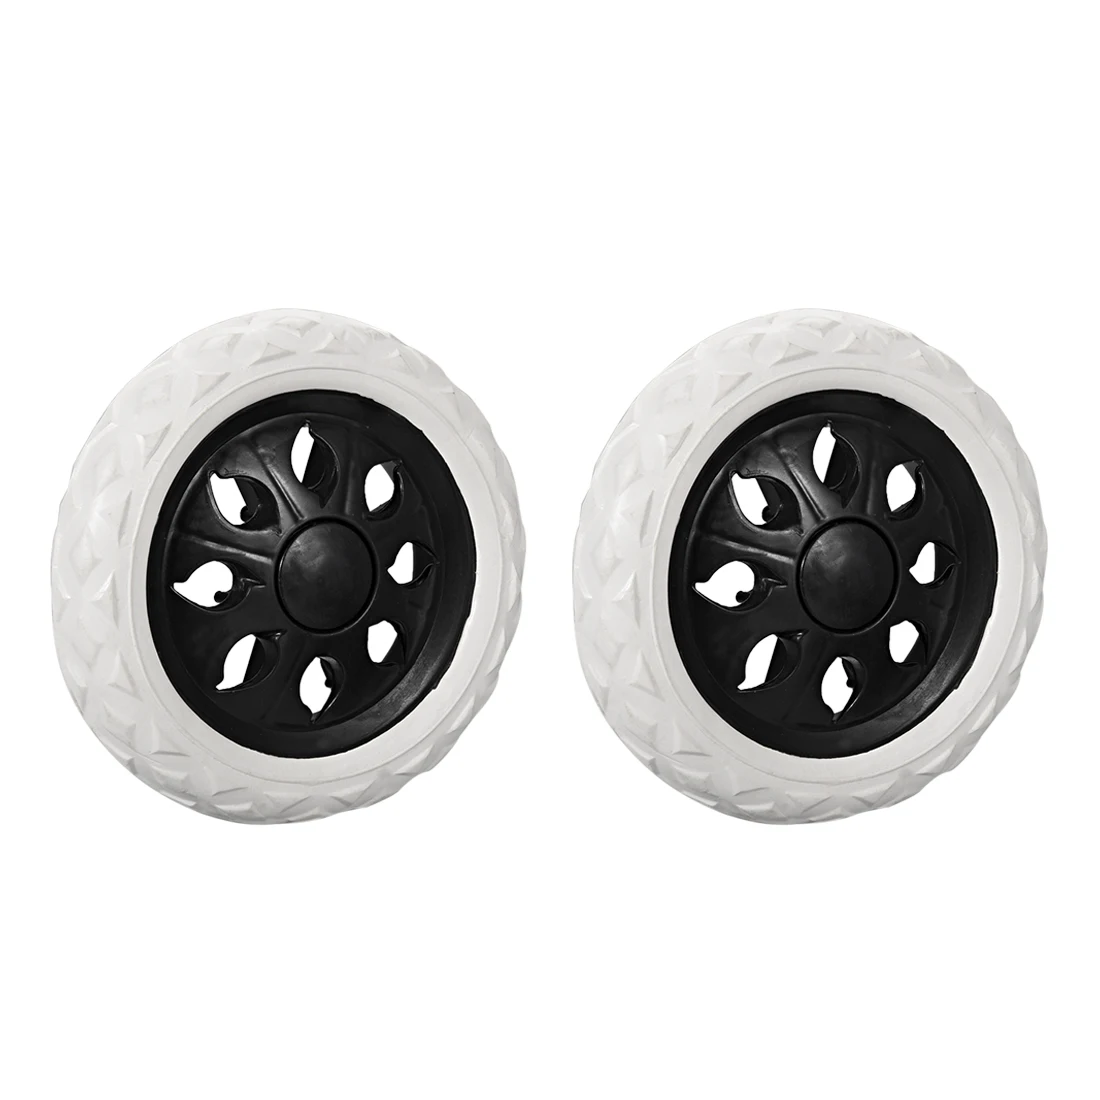 Uxcell-ruedas de carro de la compra, recambio de rueda de 6,5 pulgadas de diámetro, espuma de goma negra, 2 uds.